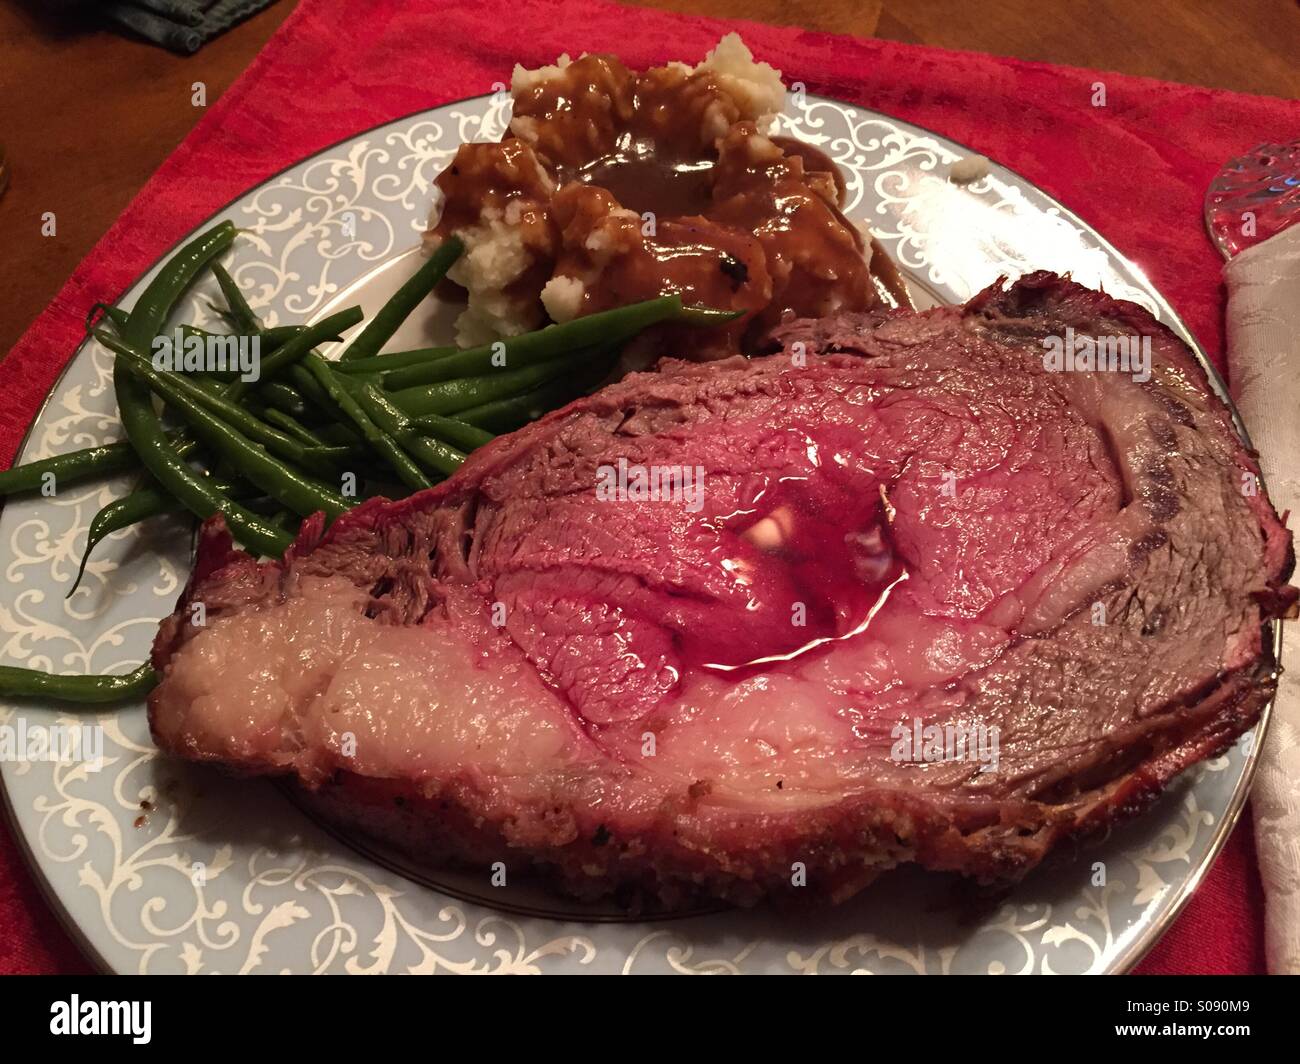 Christmas Dinner Plate Prime Rib Roast With Au Jus Stock Photo Alamy